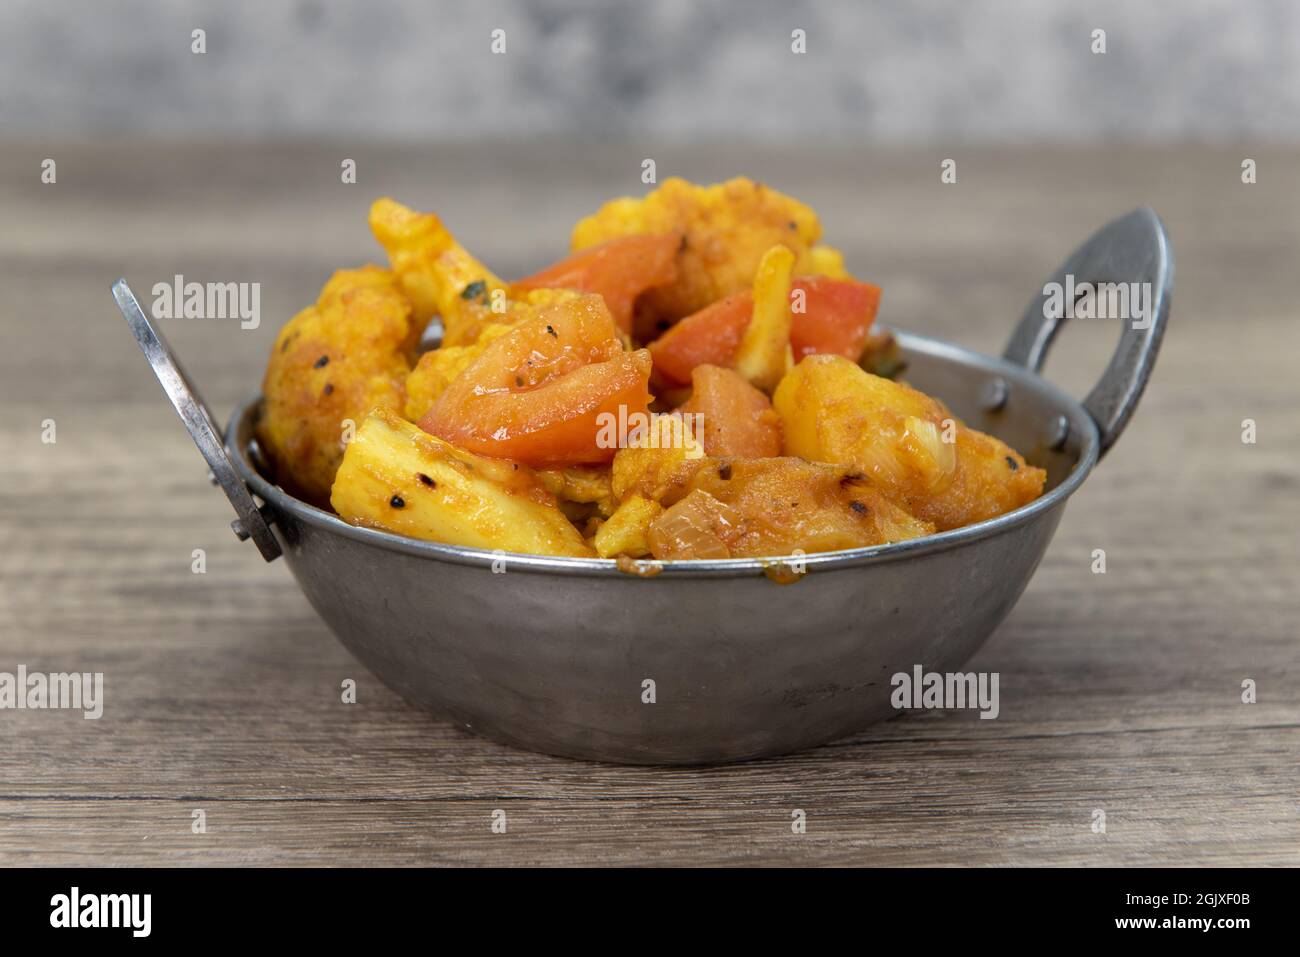 Le verdure aromatizzate con alogobi in una ciotola del ristorante indiano cucinate e condite perfettamente. Foto Stock